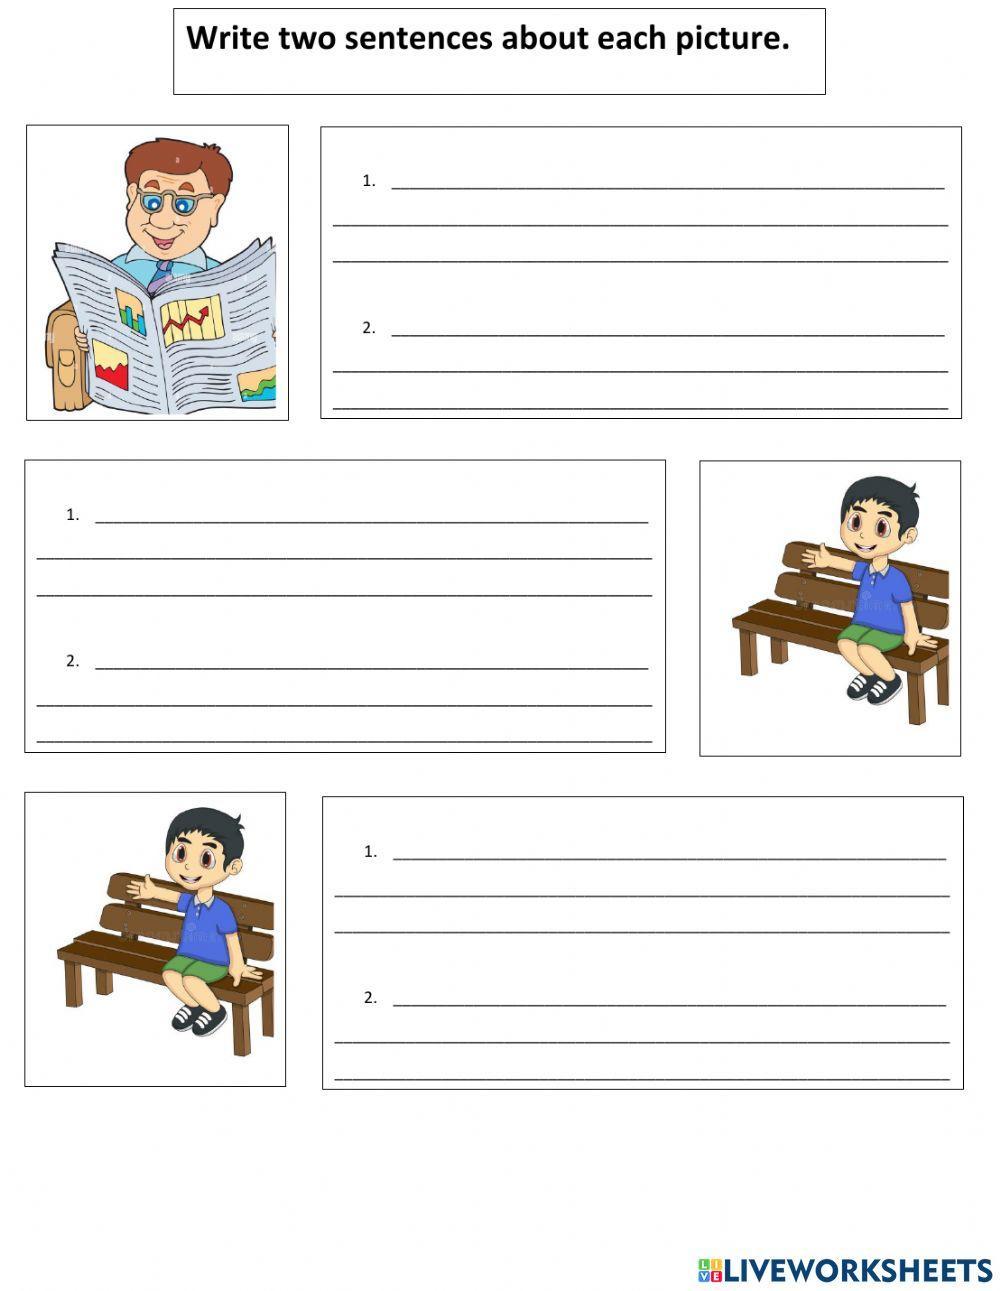 ESL Sentence Writing Practice Level 1-3 worksheet | Live Worksheets